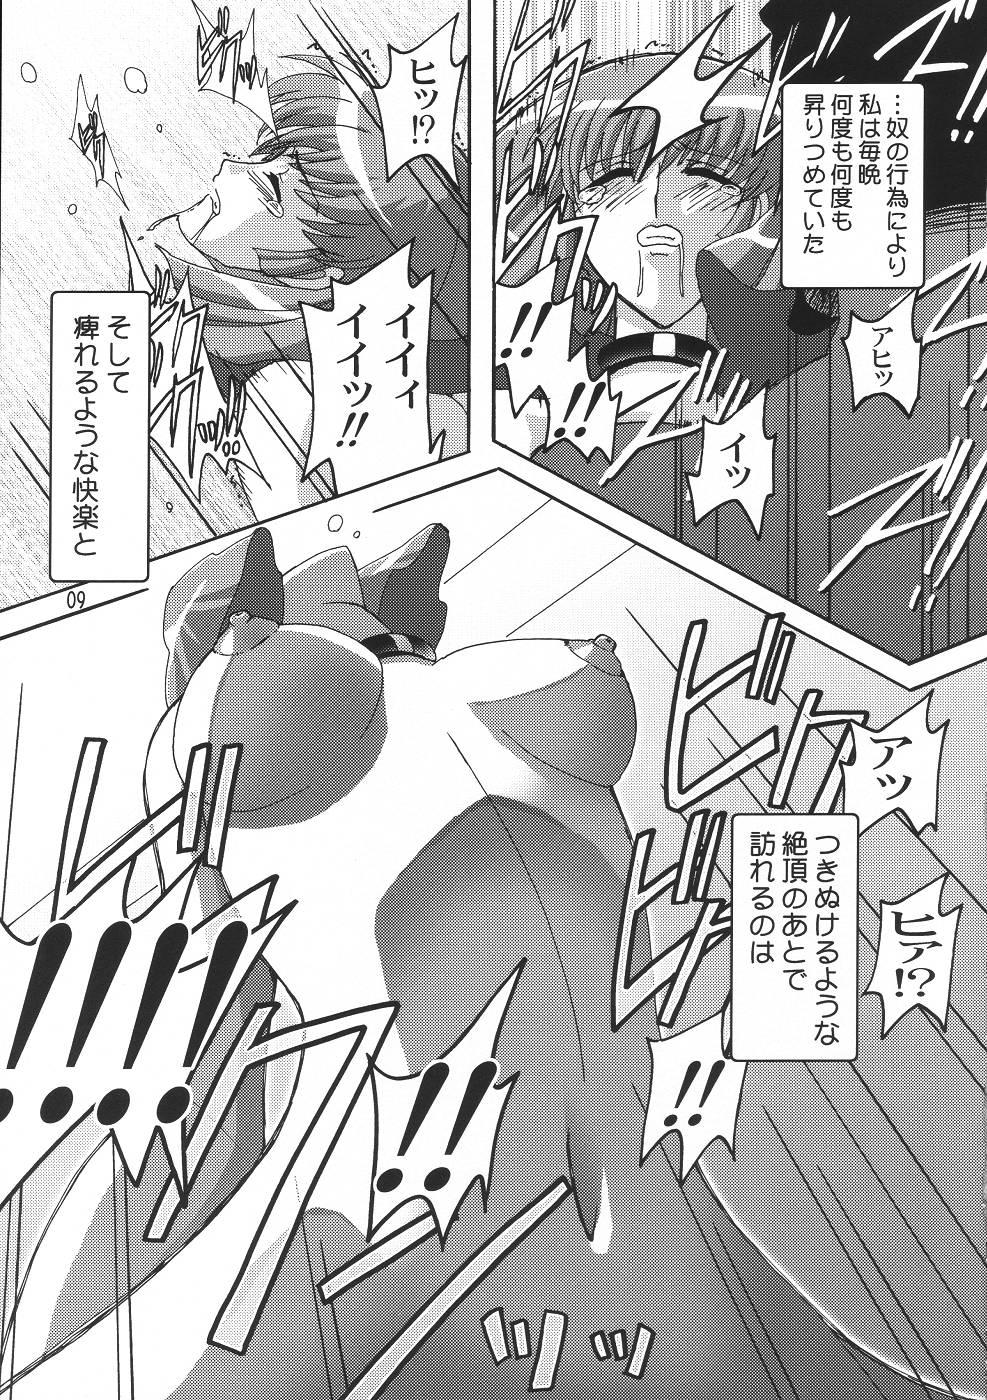 Fishnets Rho - Gundam zz Negao - Page 8